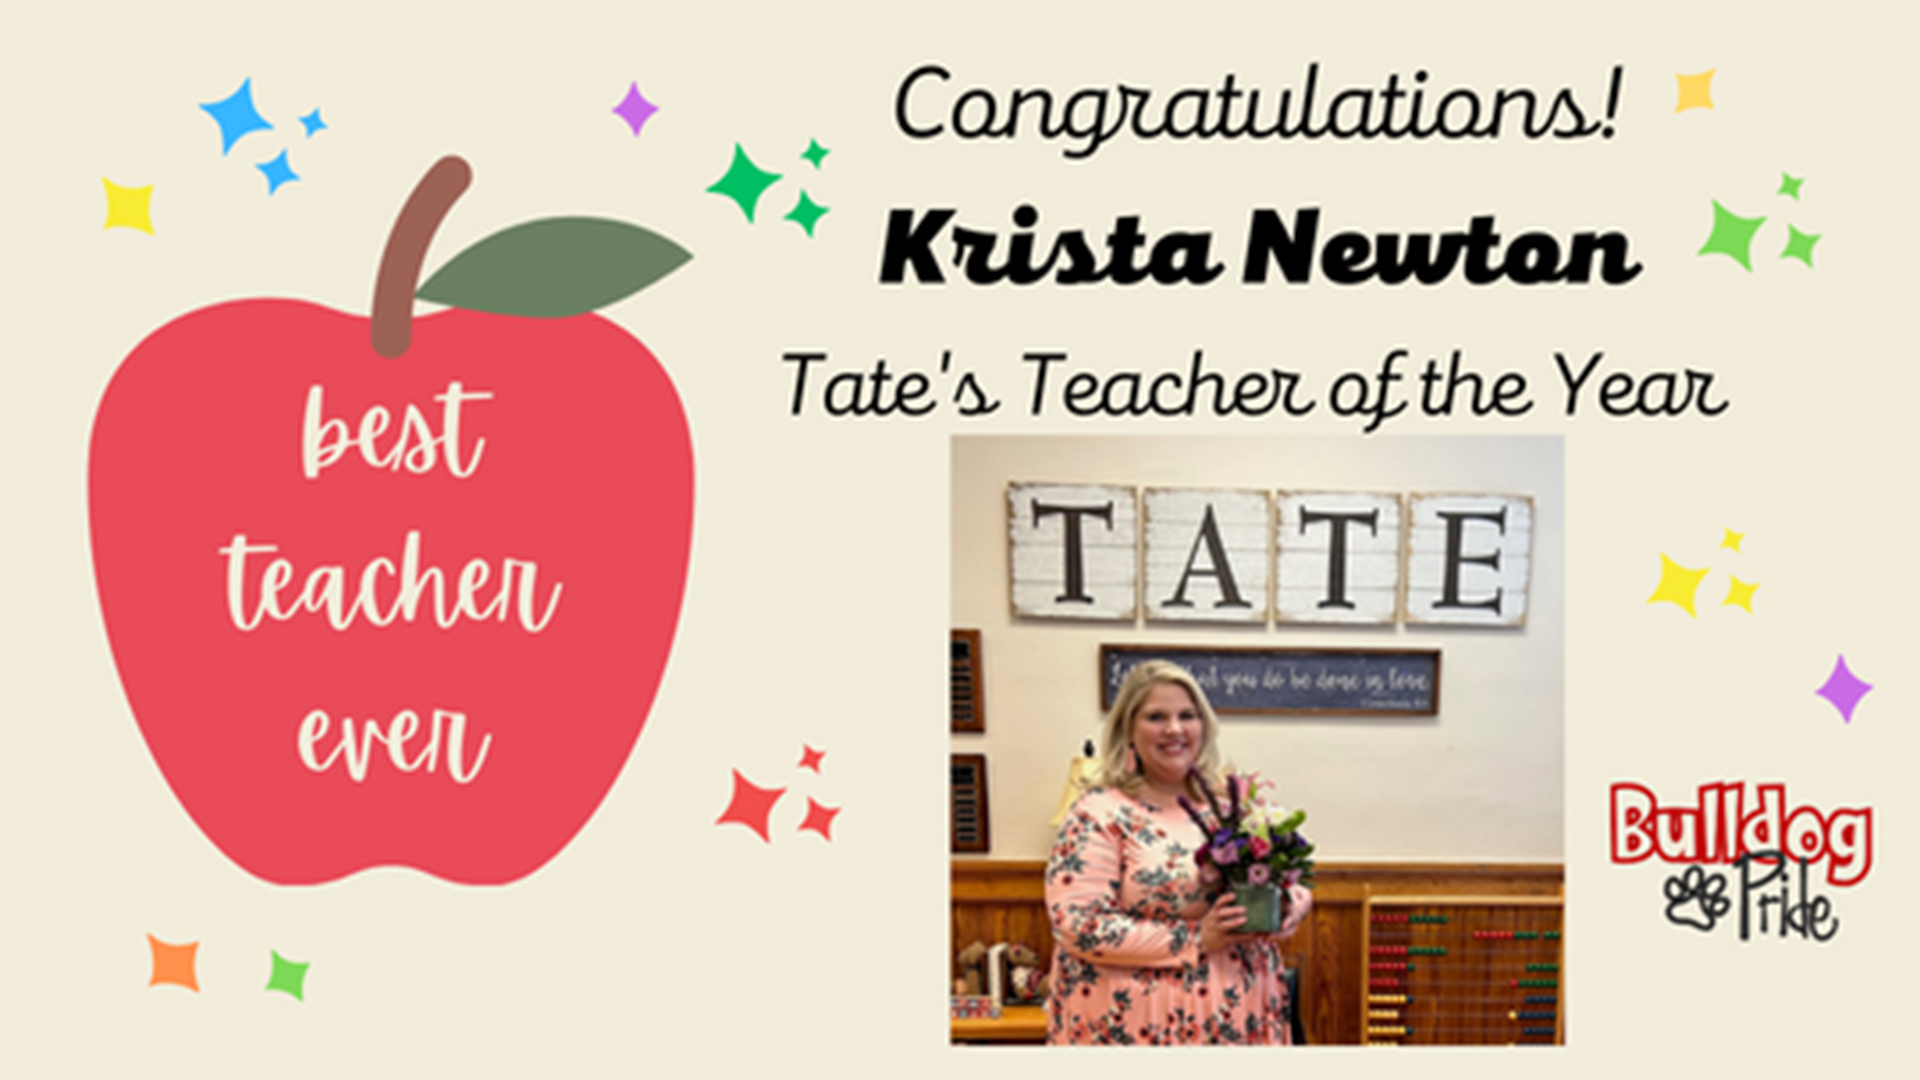 Krista Newton, Teacher of the Year!